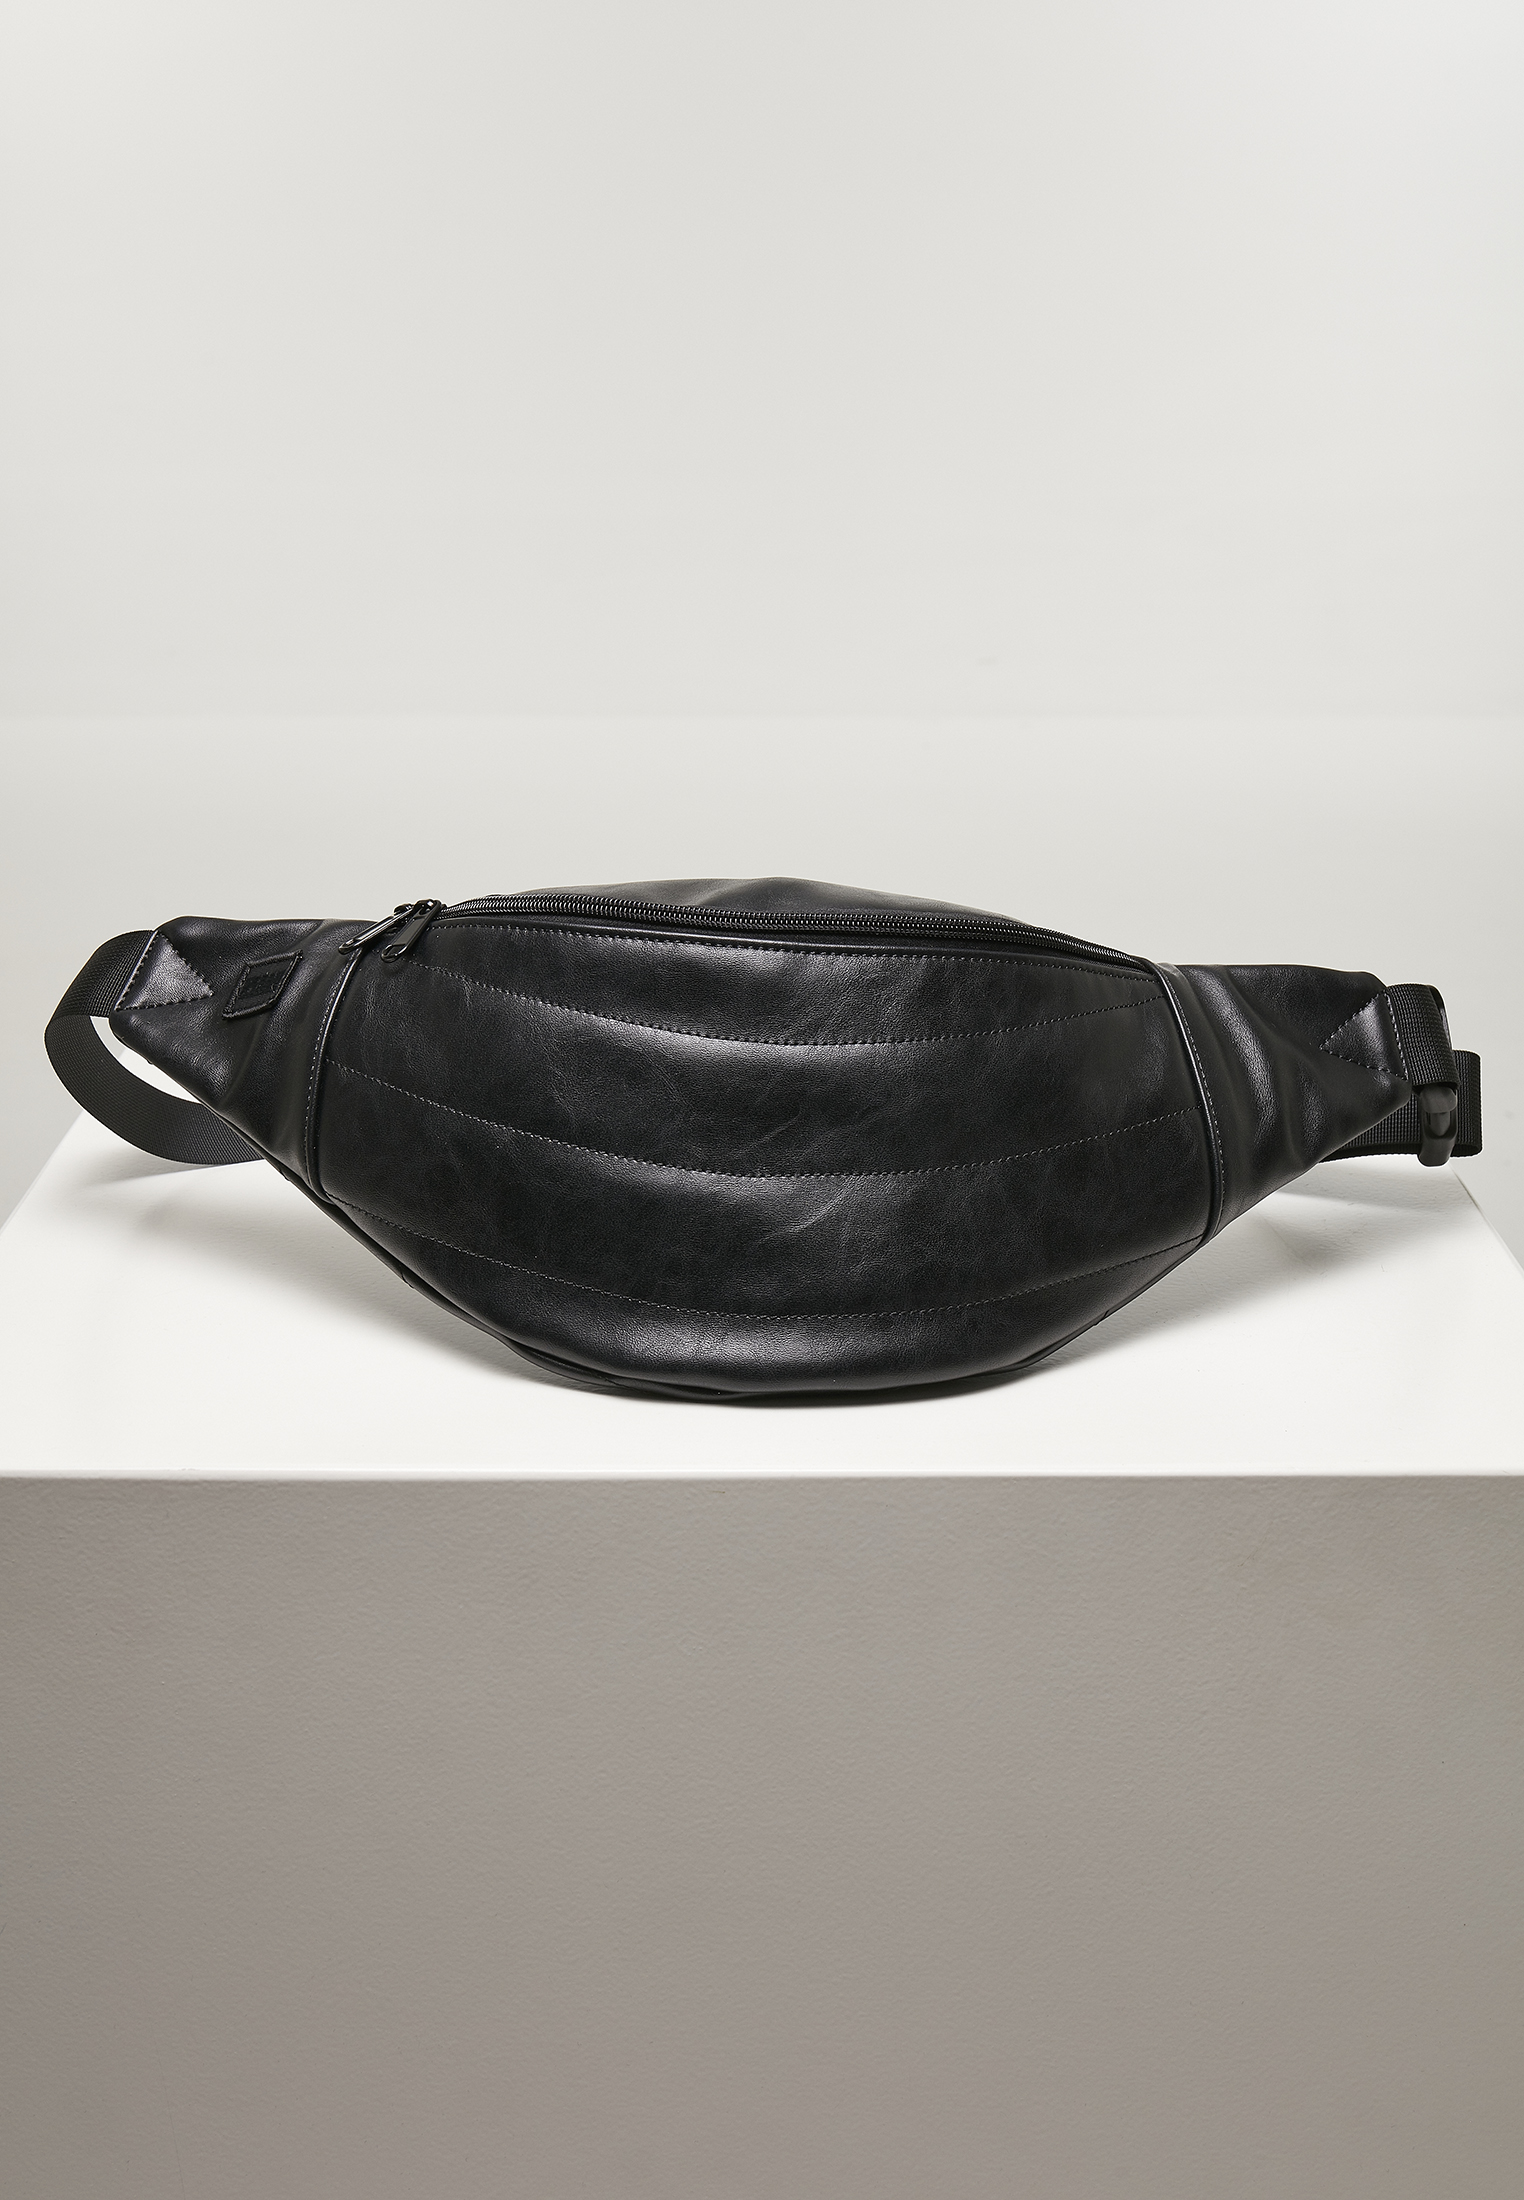 Black Shoulder Bag Made Of Imitation Leather